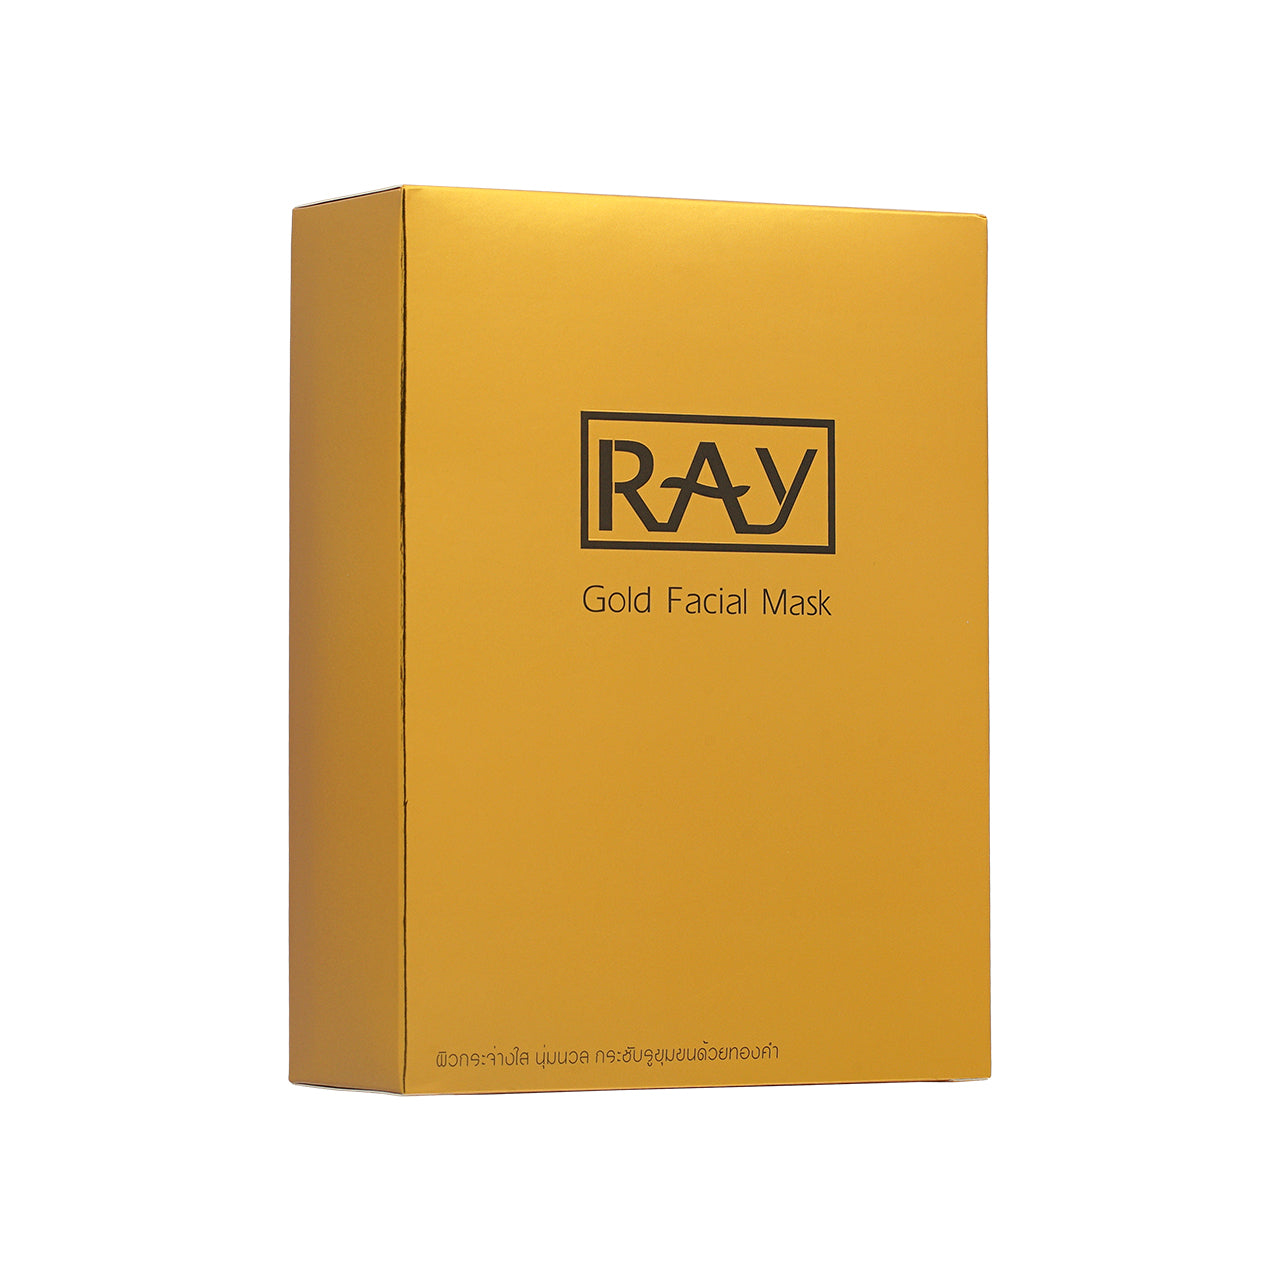 Ray Facial Mask Gold 10PCS | Sasa Global eShop